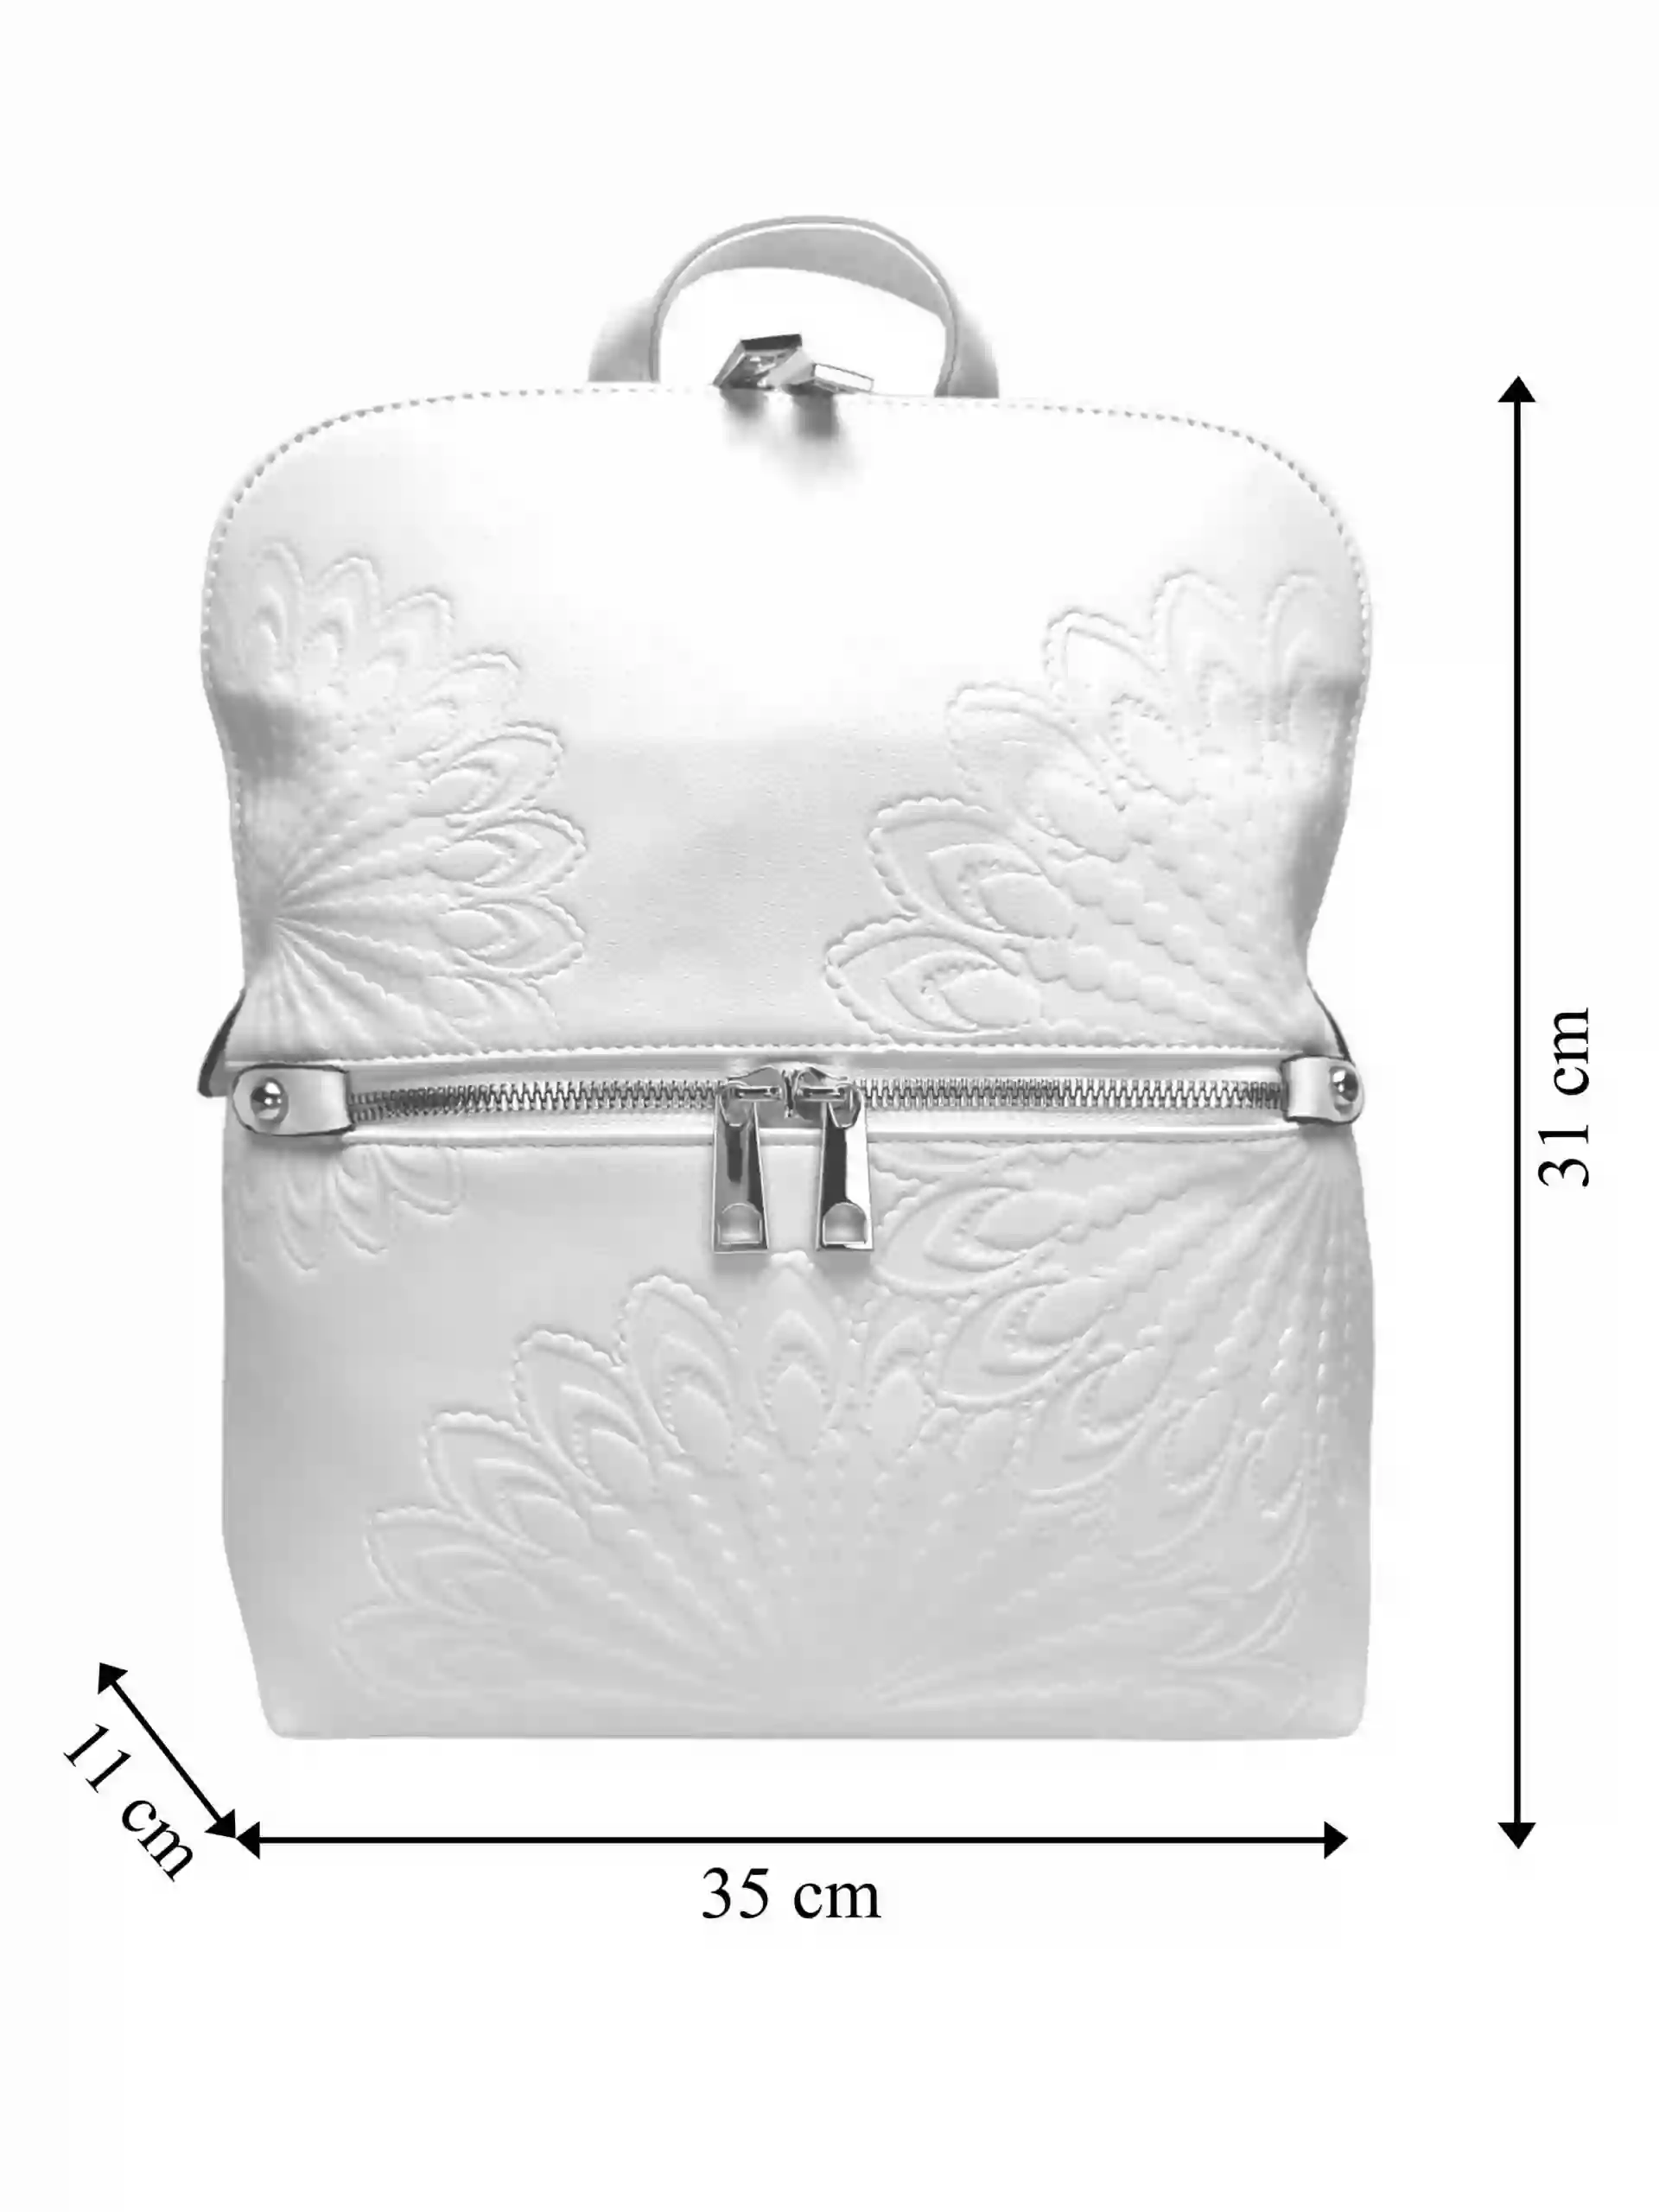 Perleťově bílý dámský batoh s ornamenty, Tapple, H20820-12, přední strana batohu s rozměry